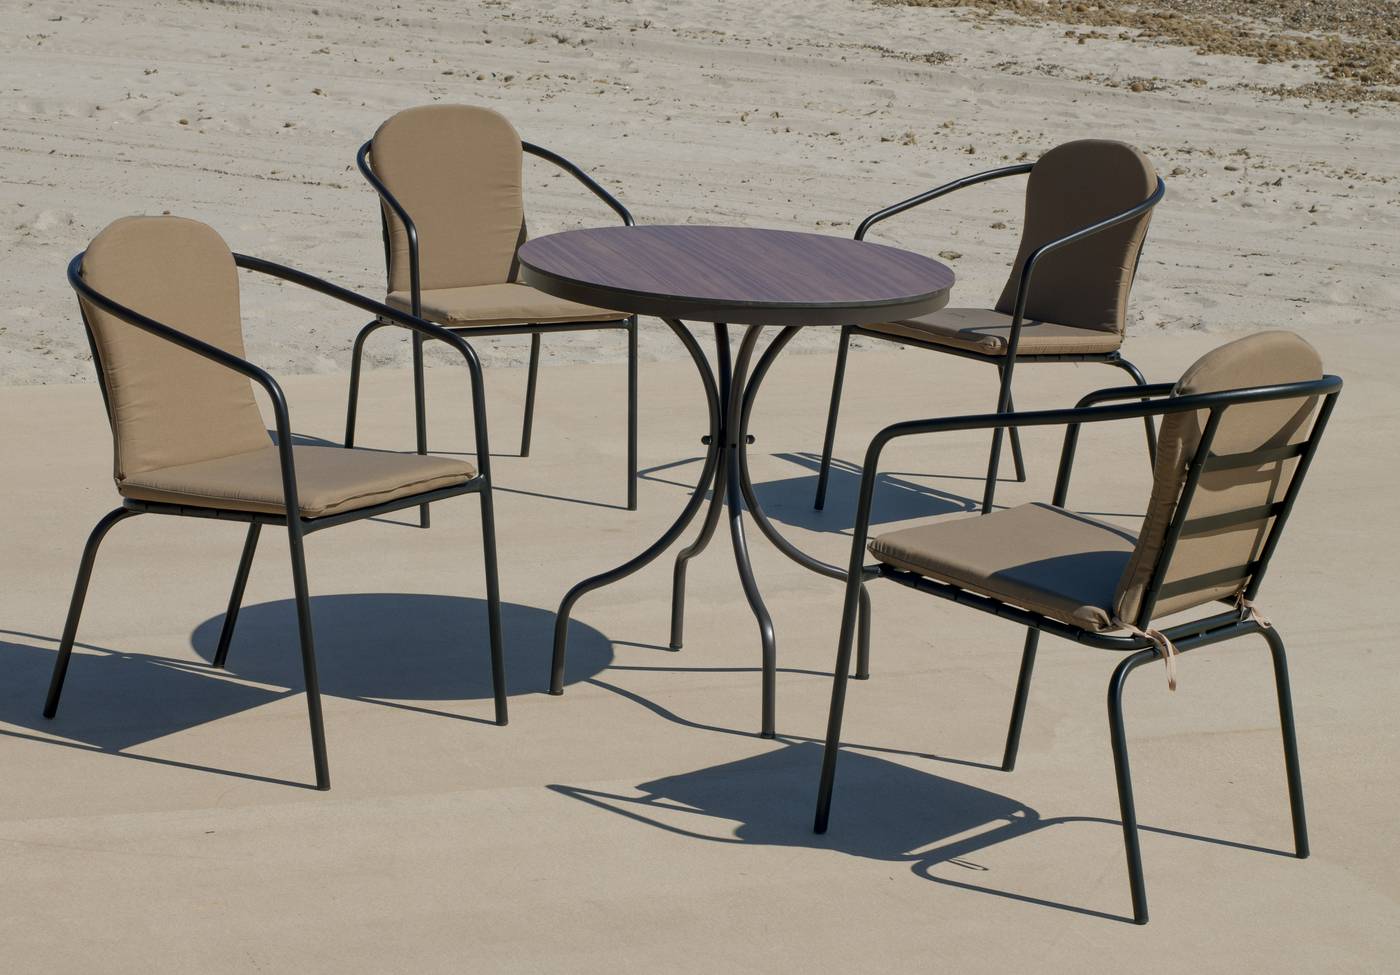 Conjunto aluminio color marrón: Mesa redonda con tablero HPL de 75 cm + 4 sillones con cojines.